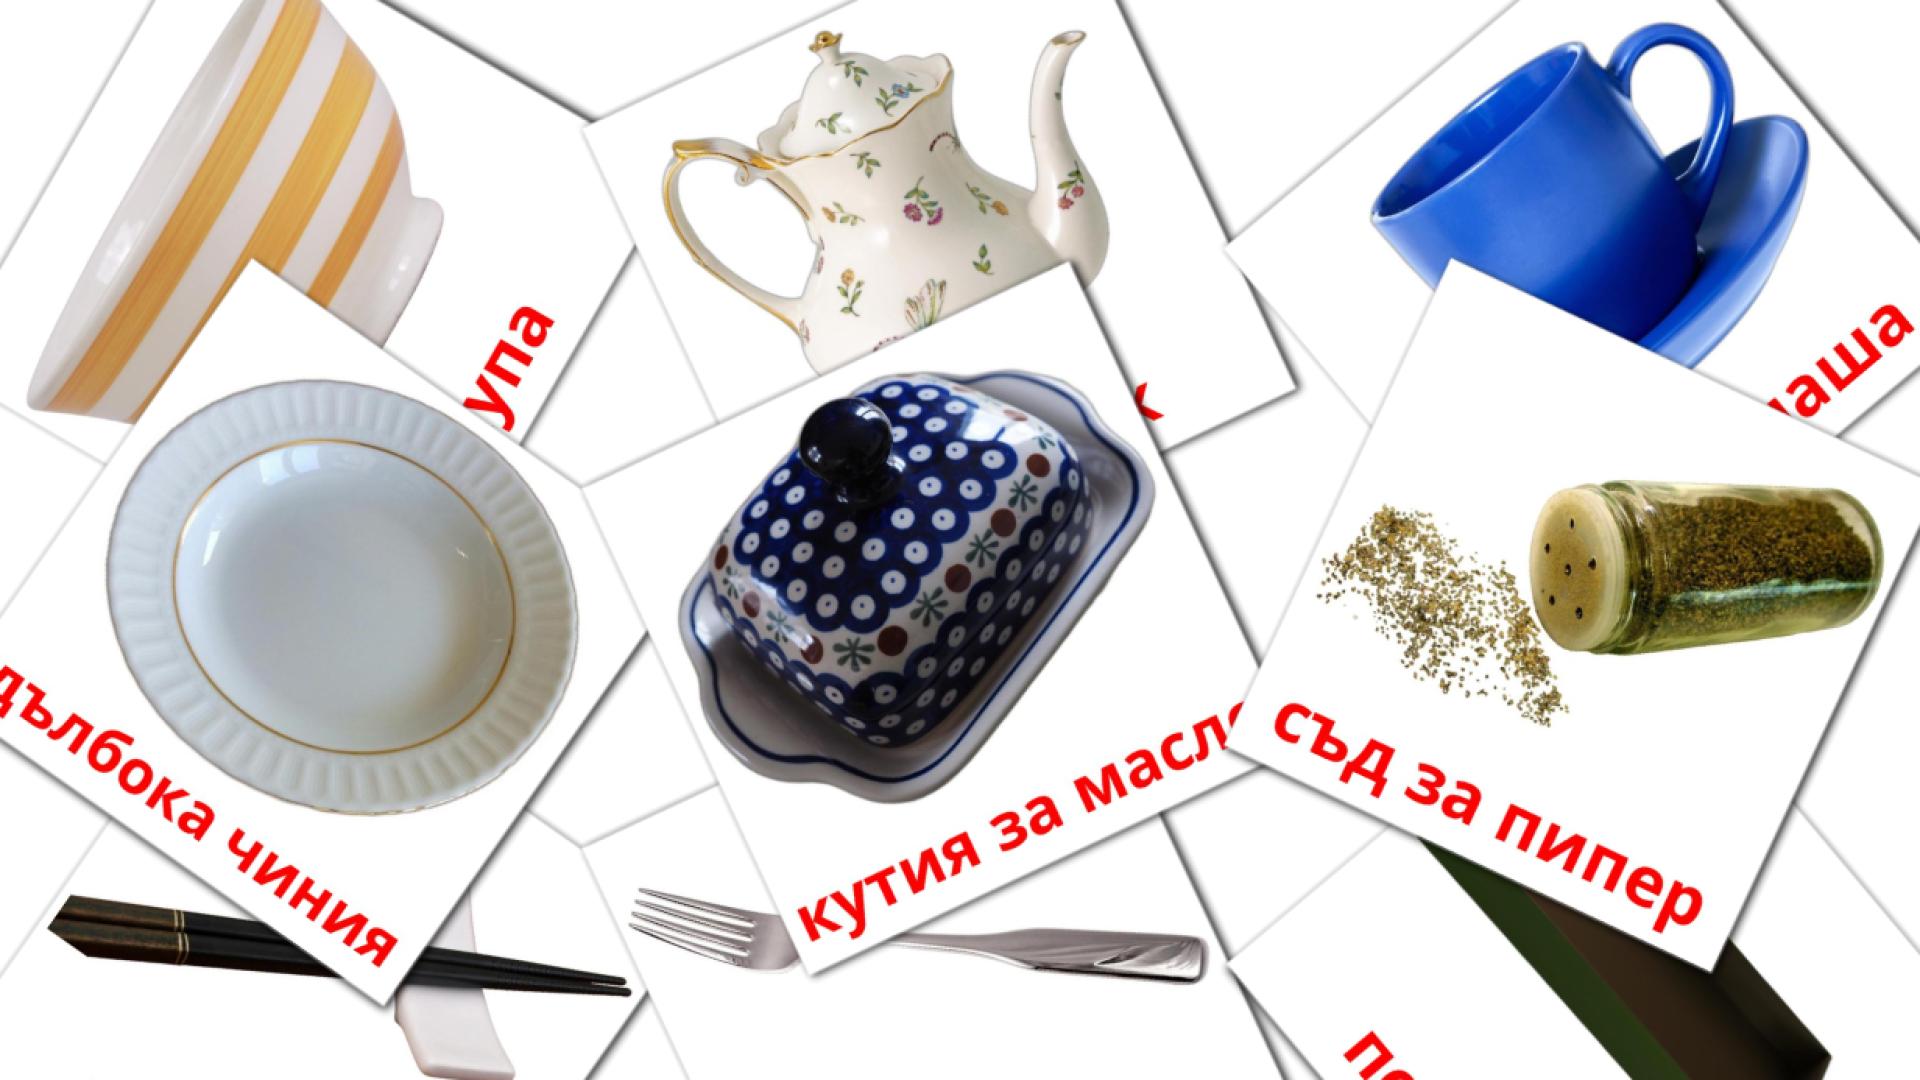 29 Bildkarten für Посуда